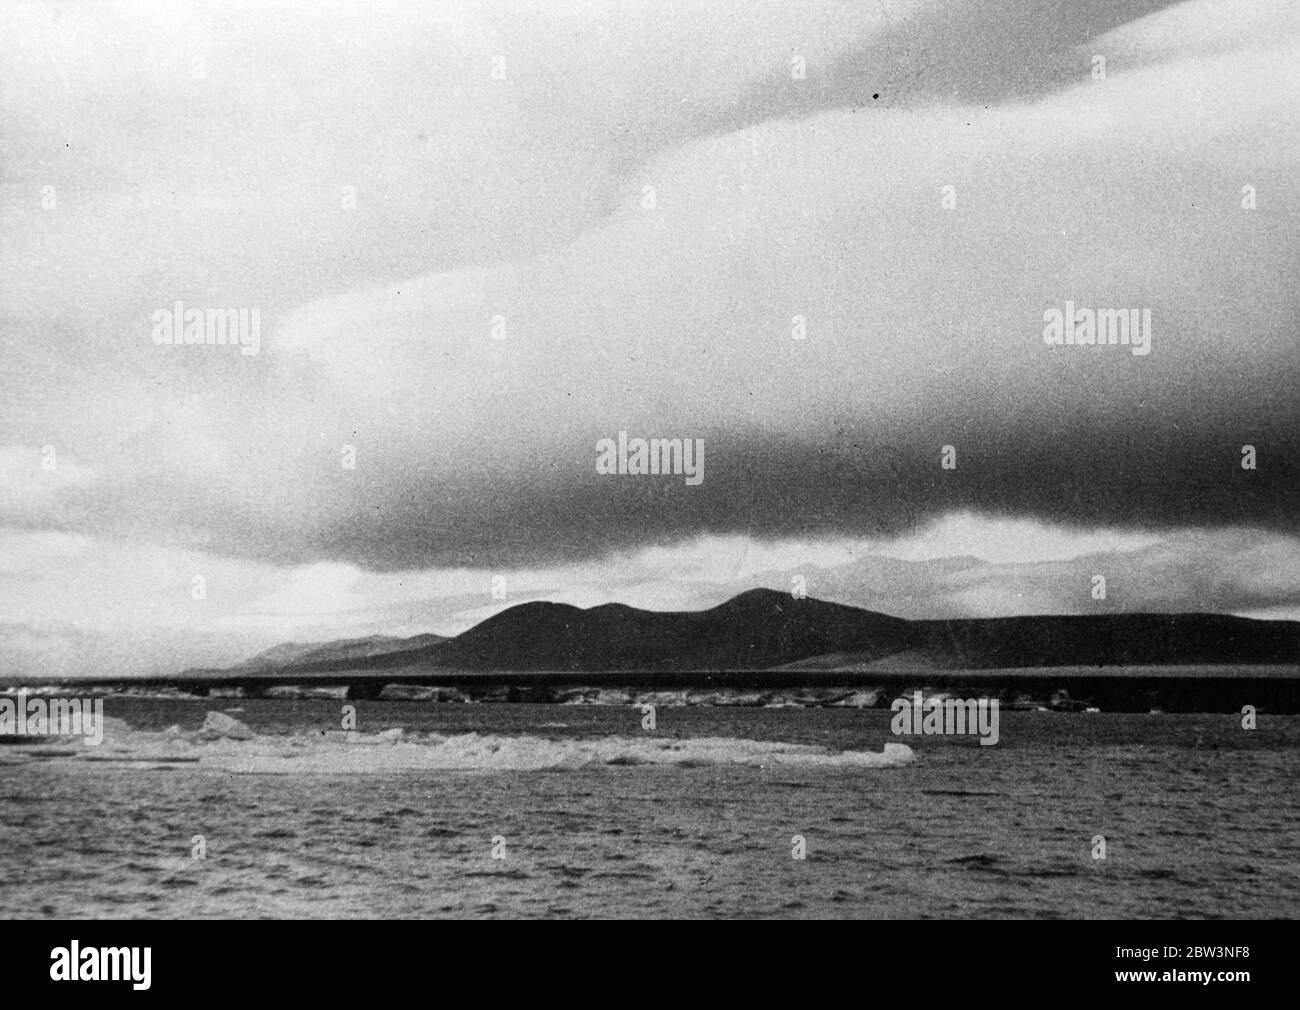 Arktisinsel, wo sowjetische Wissenschaftler als Zar regieren - täuscht Wahnsinn bei Mordprozess . Rodgers Bey, Wrangel Island. 20 Mai 1936 Stockfoto